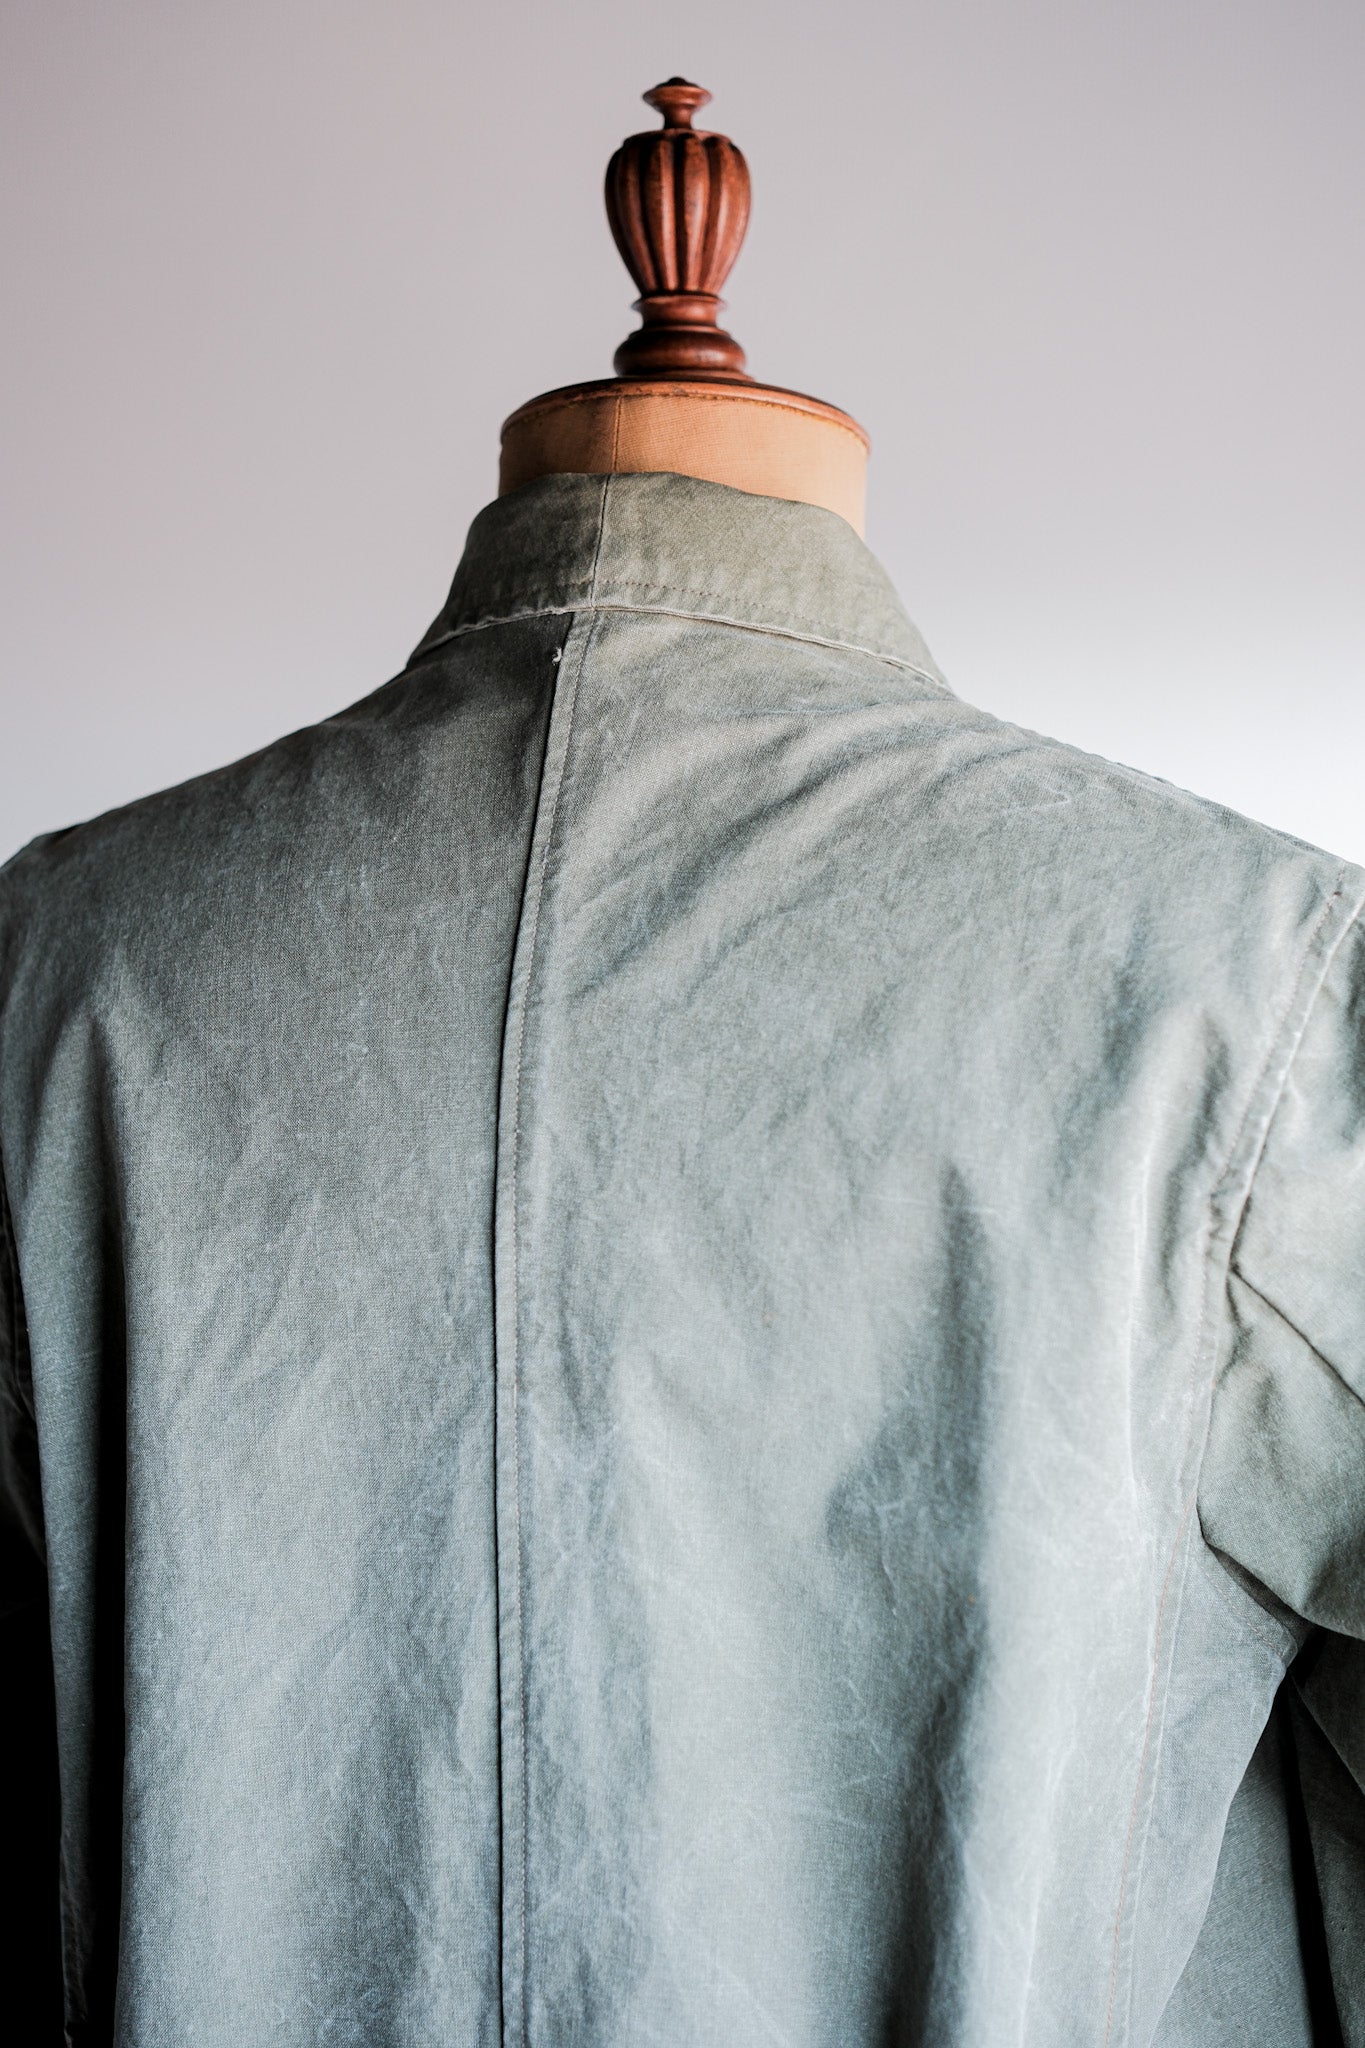 【~50's】German Vintage Green Cotton Work Coat